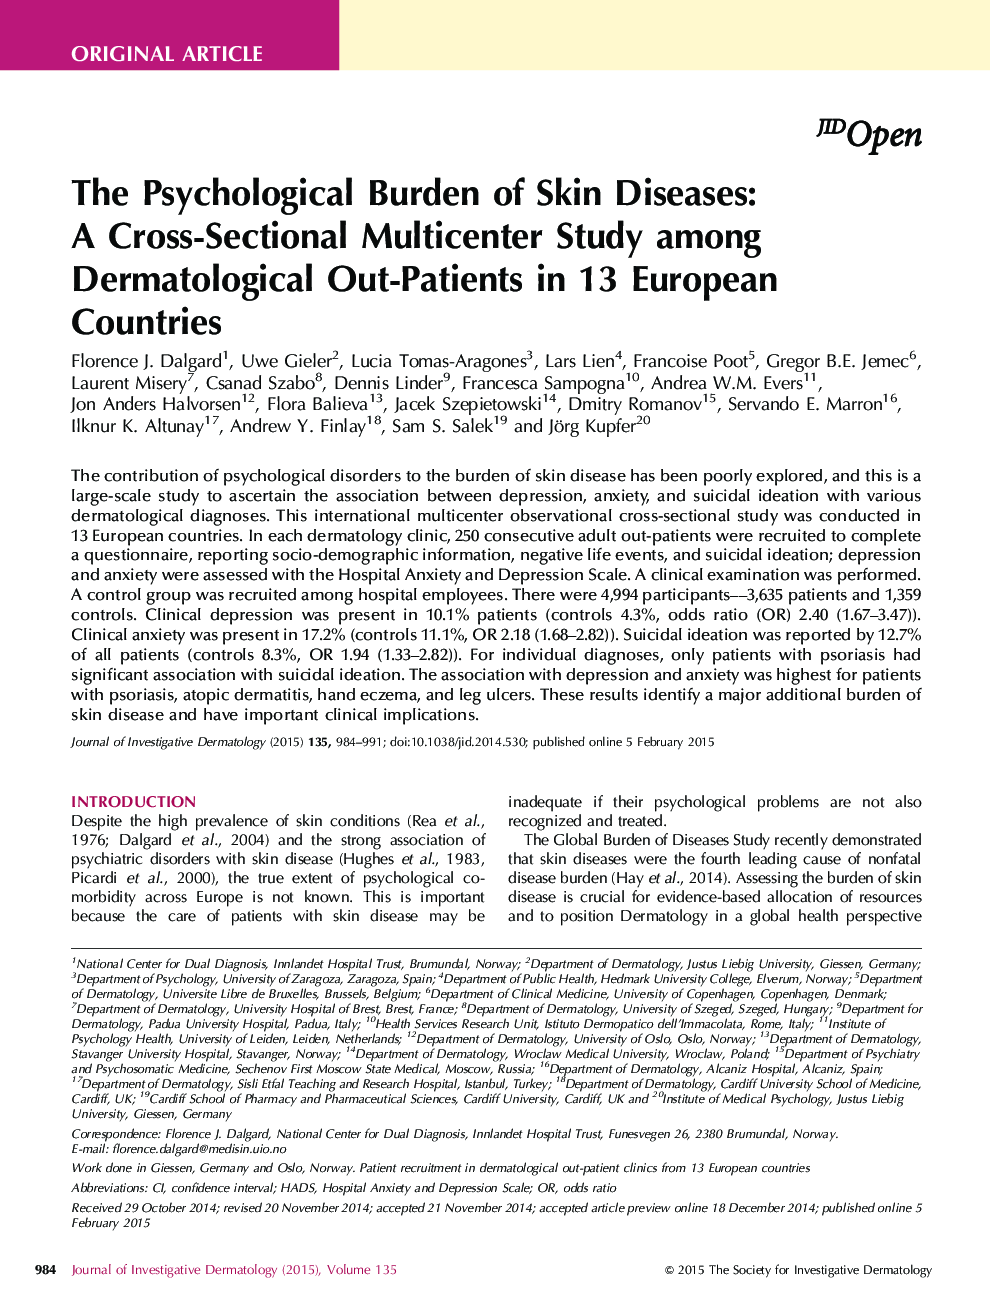 مقاله اصلی: باروری روانی بیماری های پوستی: مطالعه متقاطع چند مرحله ای در میان بیماران پوستی در 13 کشور اروپایی 